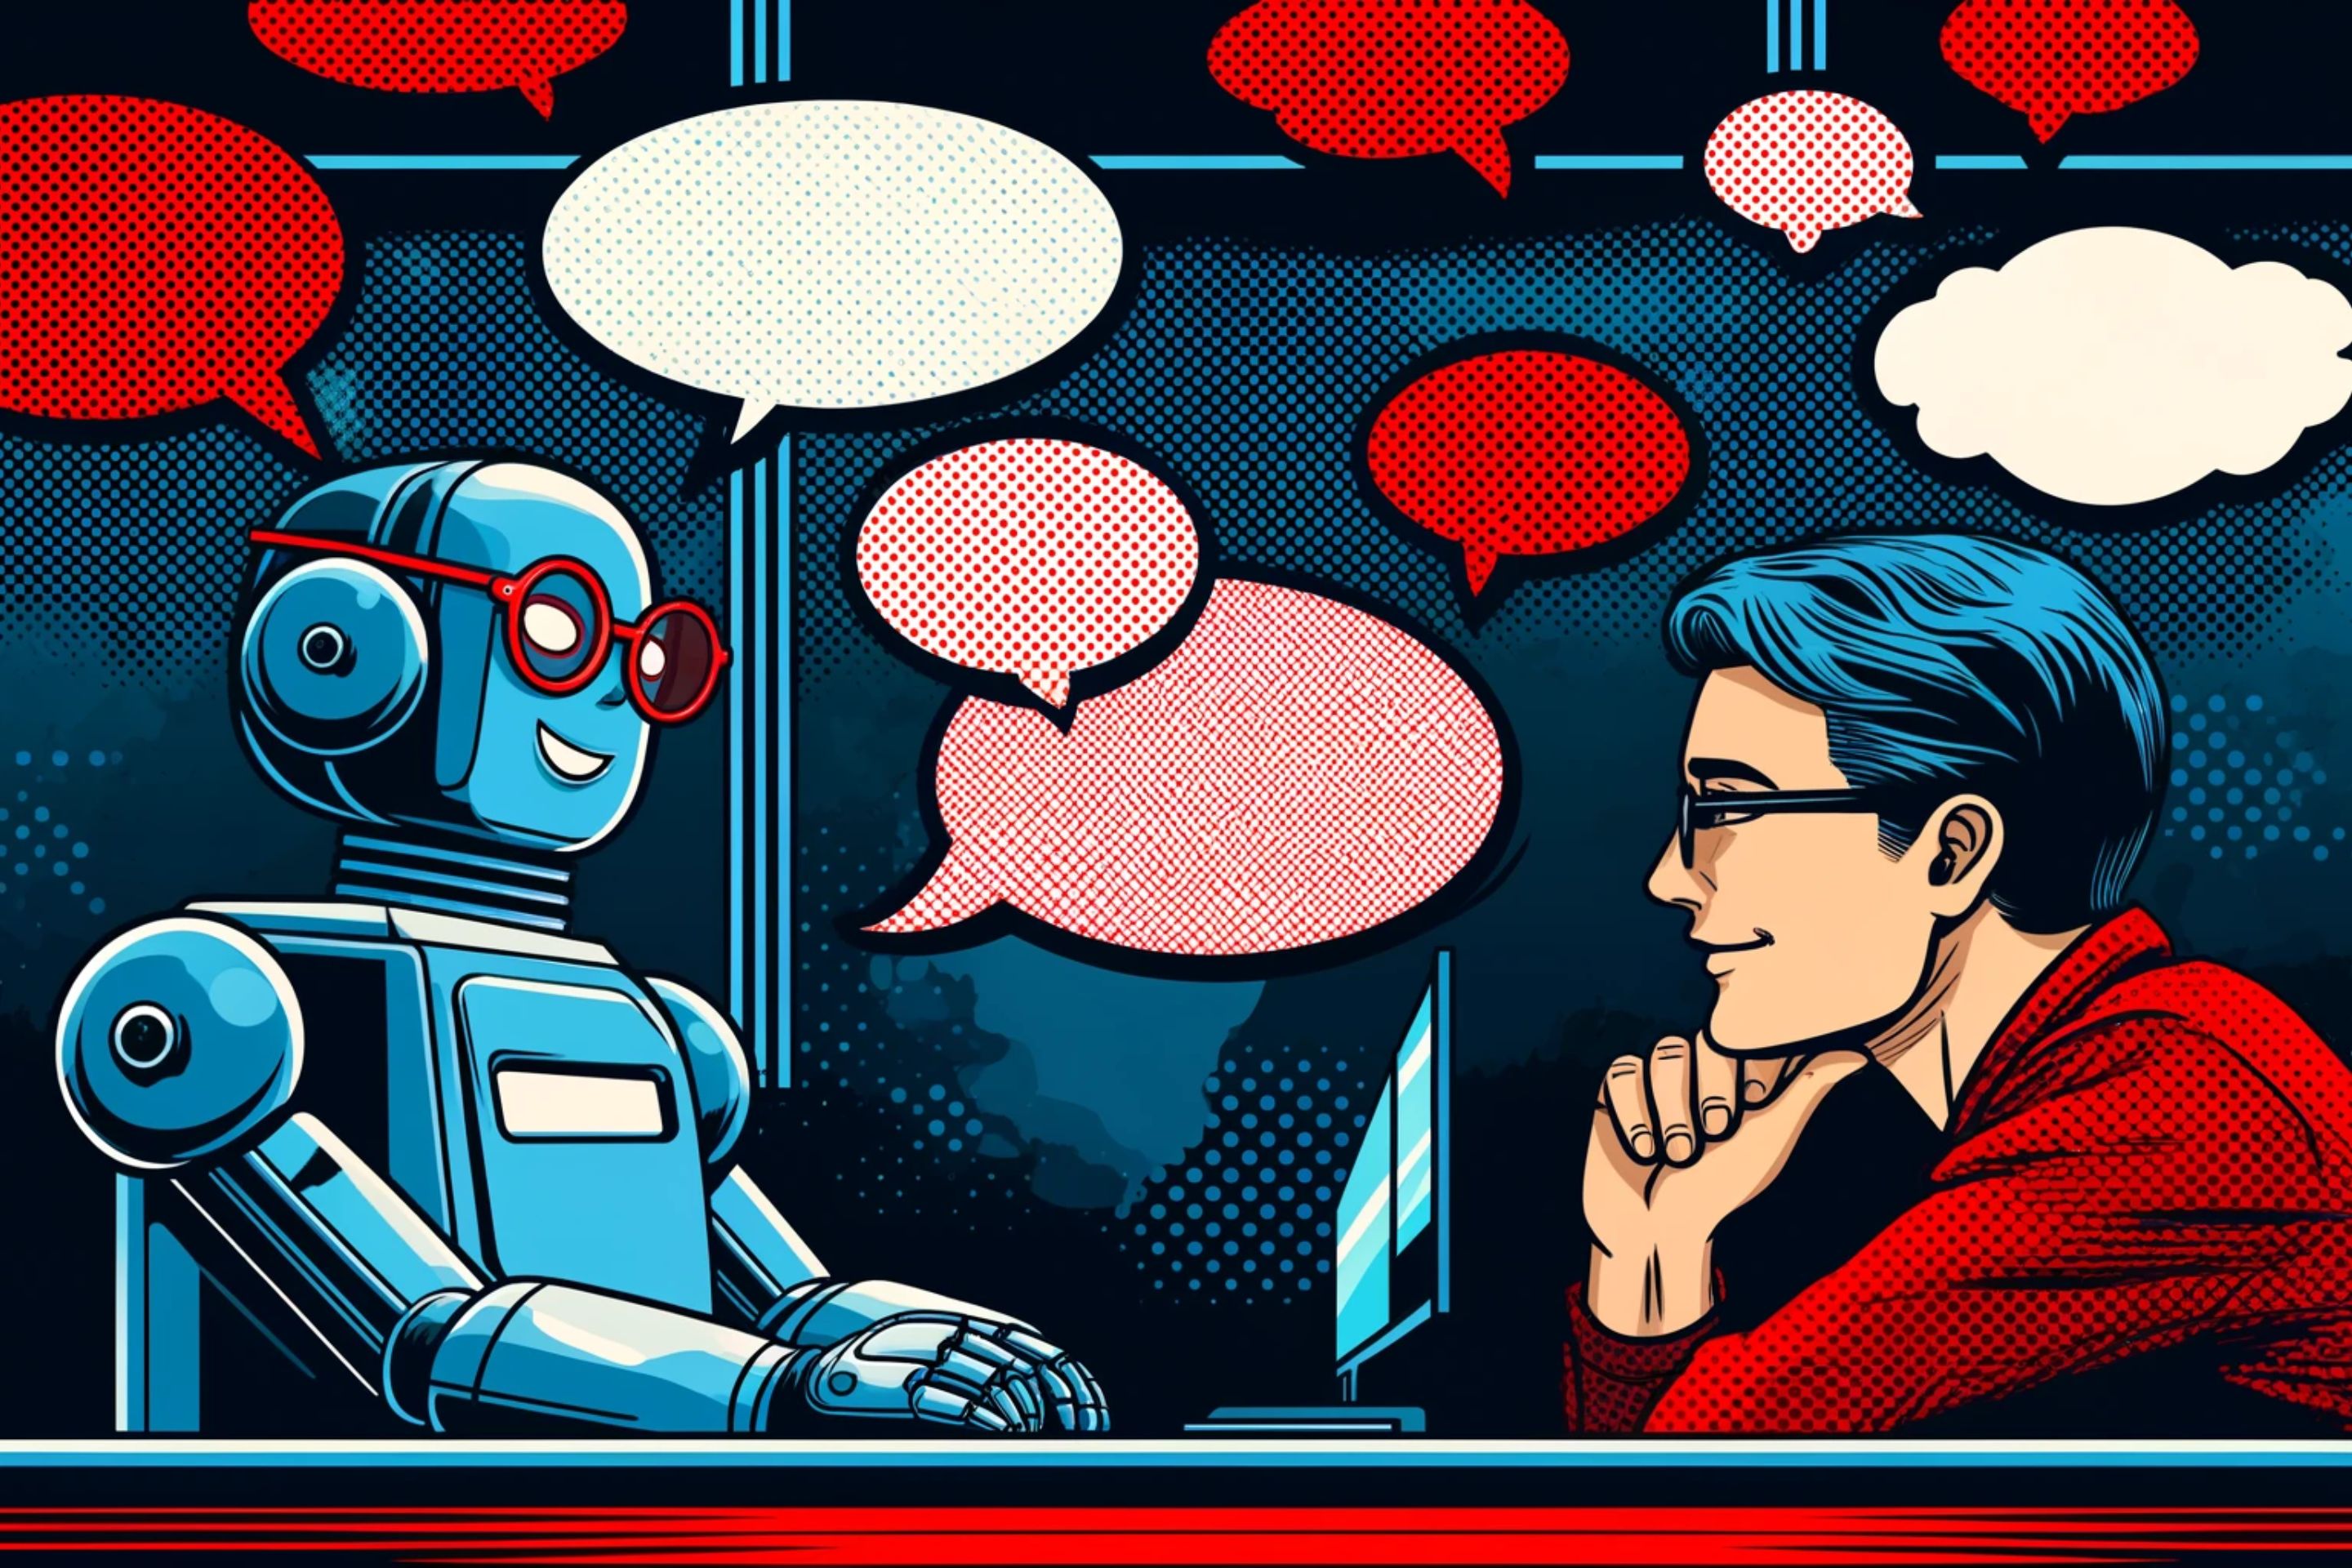 ein roboter chattet mit einem menschen